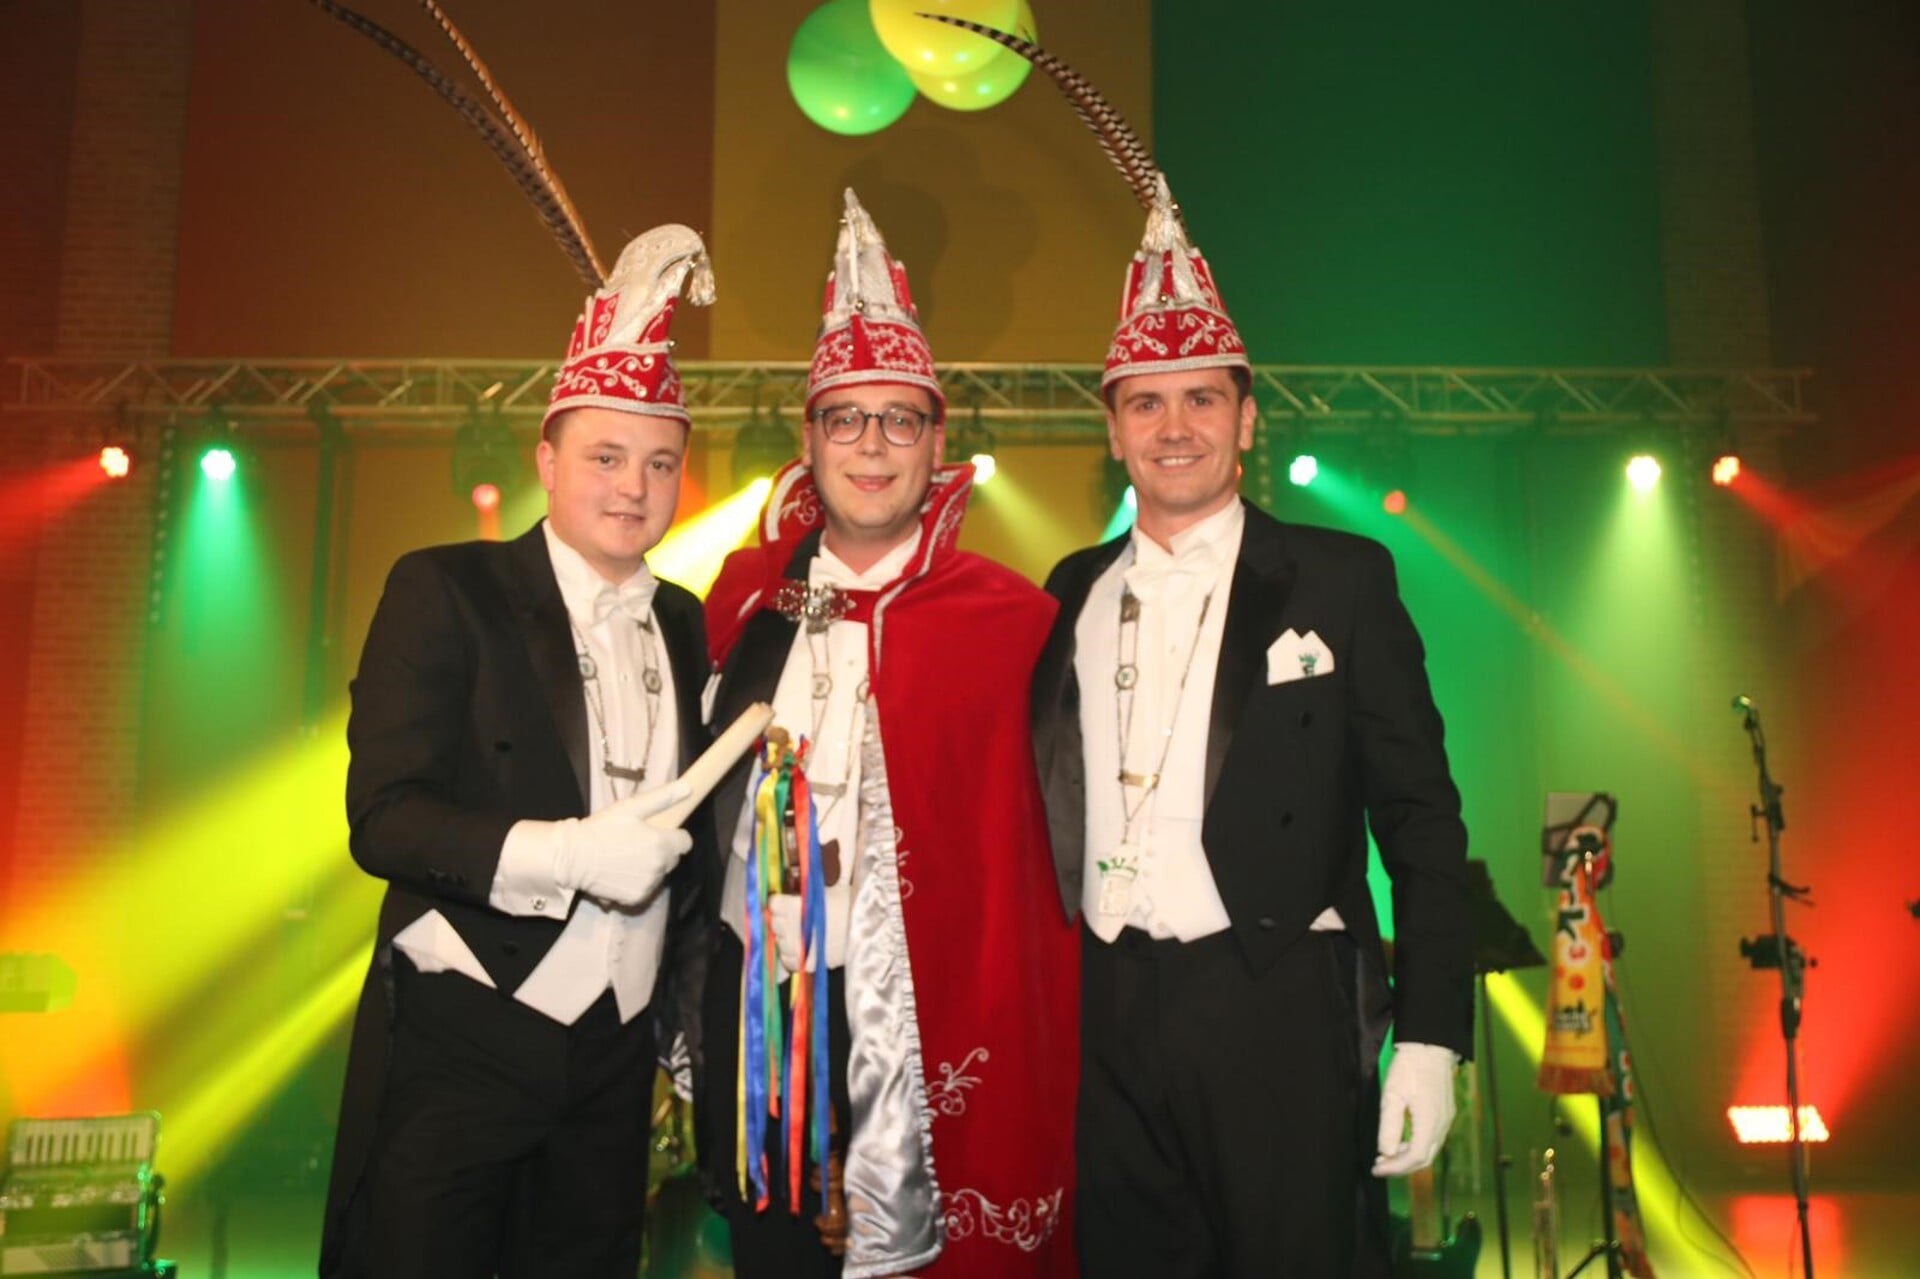 Roy Moeskops is zaterdagavond tijdens het prinsenbal uitgeroepen tot nieuwe prins van carnavalsvereniging De Keieschieters Vierlingsbeek-Groeningen. Hij wordt tijdens zijn regeerperiode bijgestaan door zijn adjudanten en vrienden Cas Jost en Jonathan Kessler. 